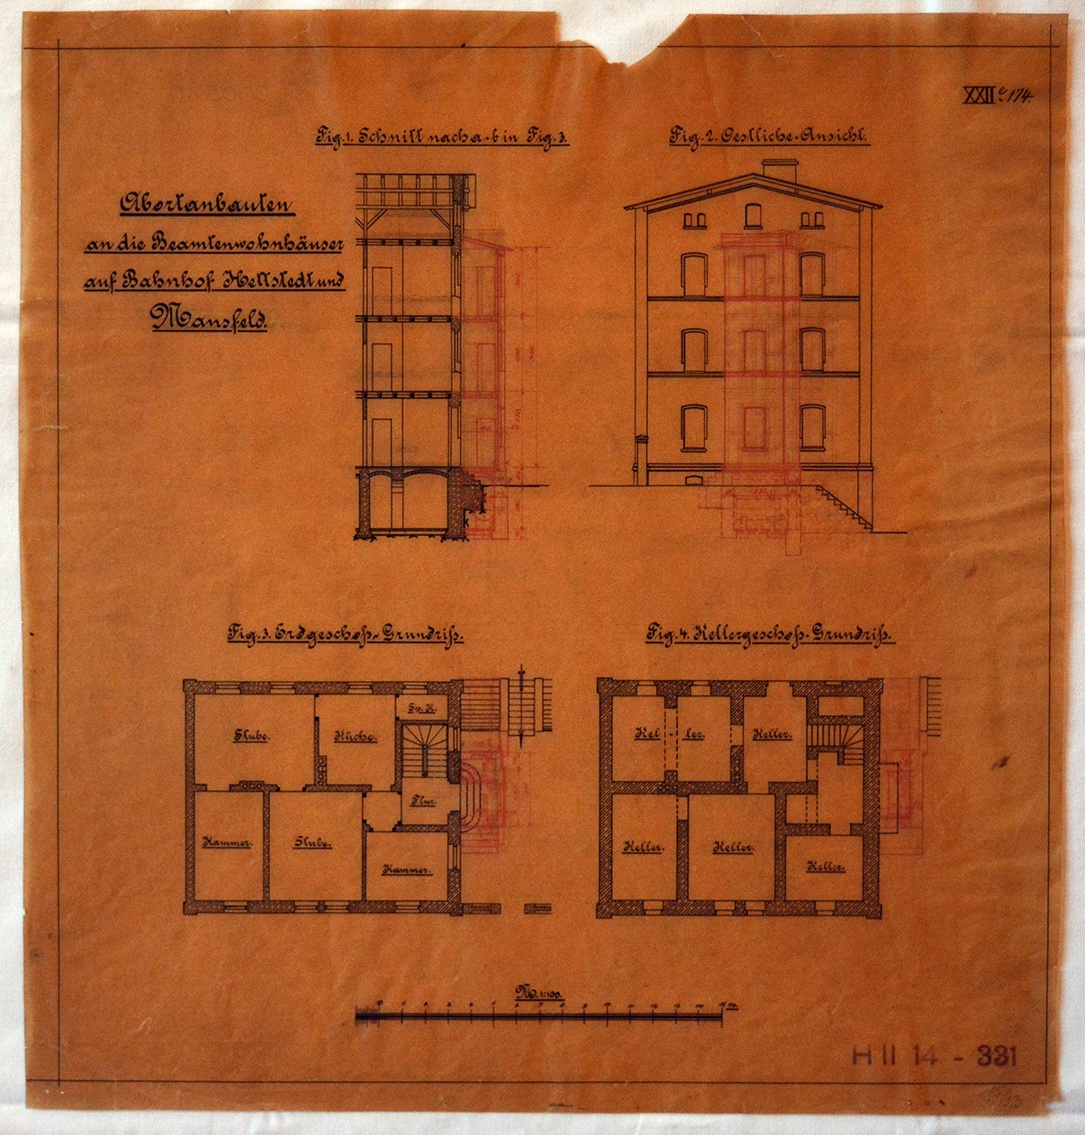 Abortanbauten an die Beamtenwohnhäuser auf Bahnhof Hettstedt und Mansfeld. (Mansfeld-Museum im Humboldt-Schloss CC BY-NC-SA)